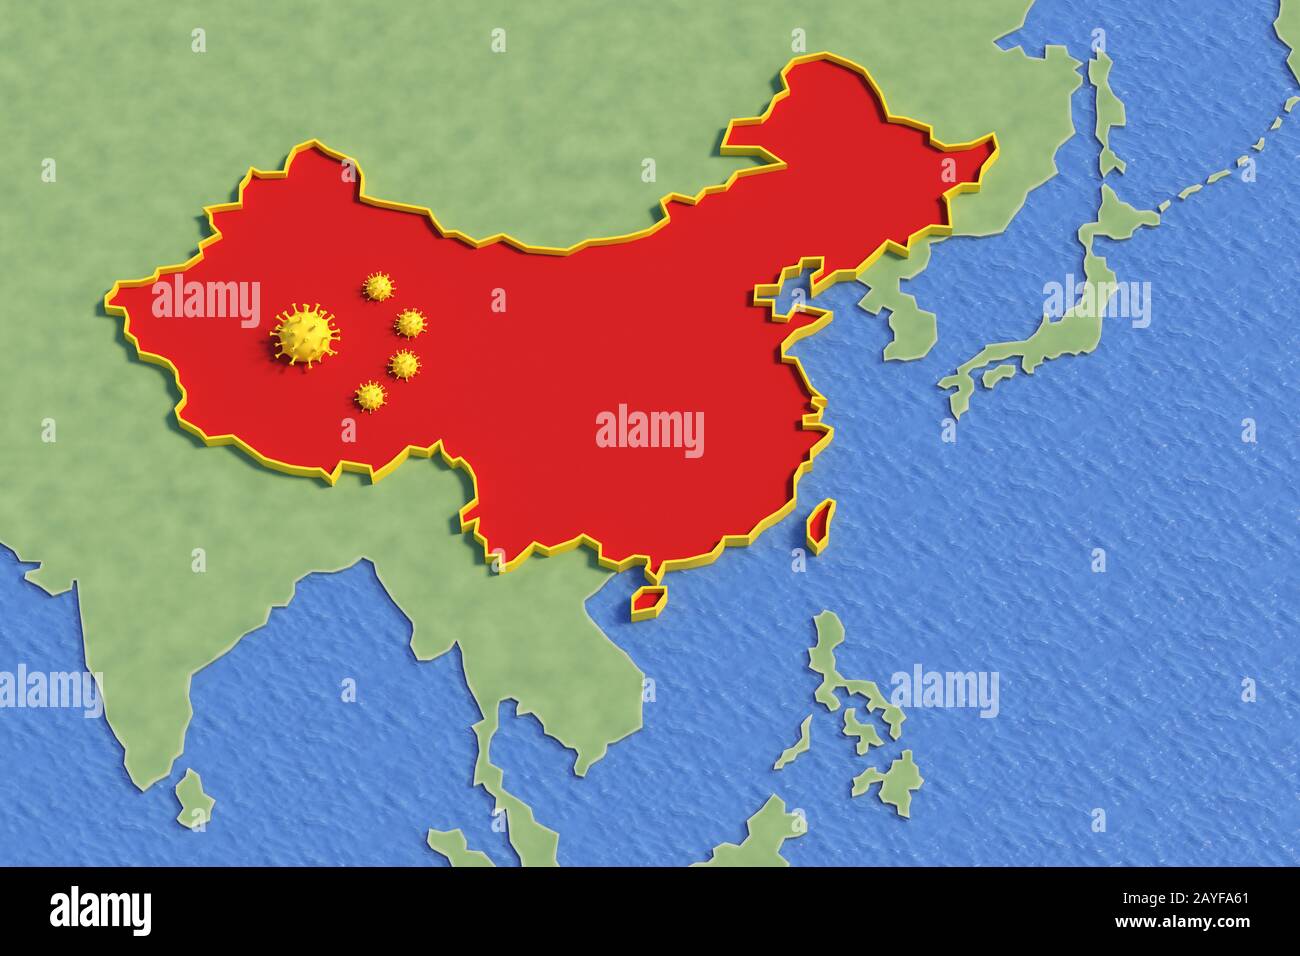 Karte republik china isoliert vom Rest der Welt wegen des Coronavirus, das als china-flagge dargestellt wird, Konzept-3d-Abbildung Stockfoto